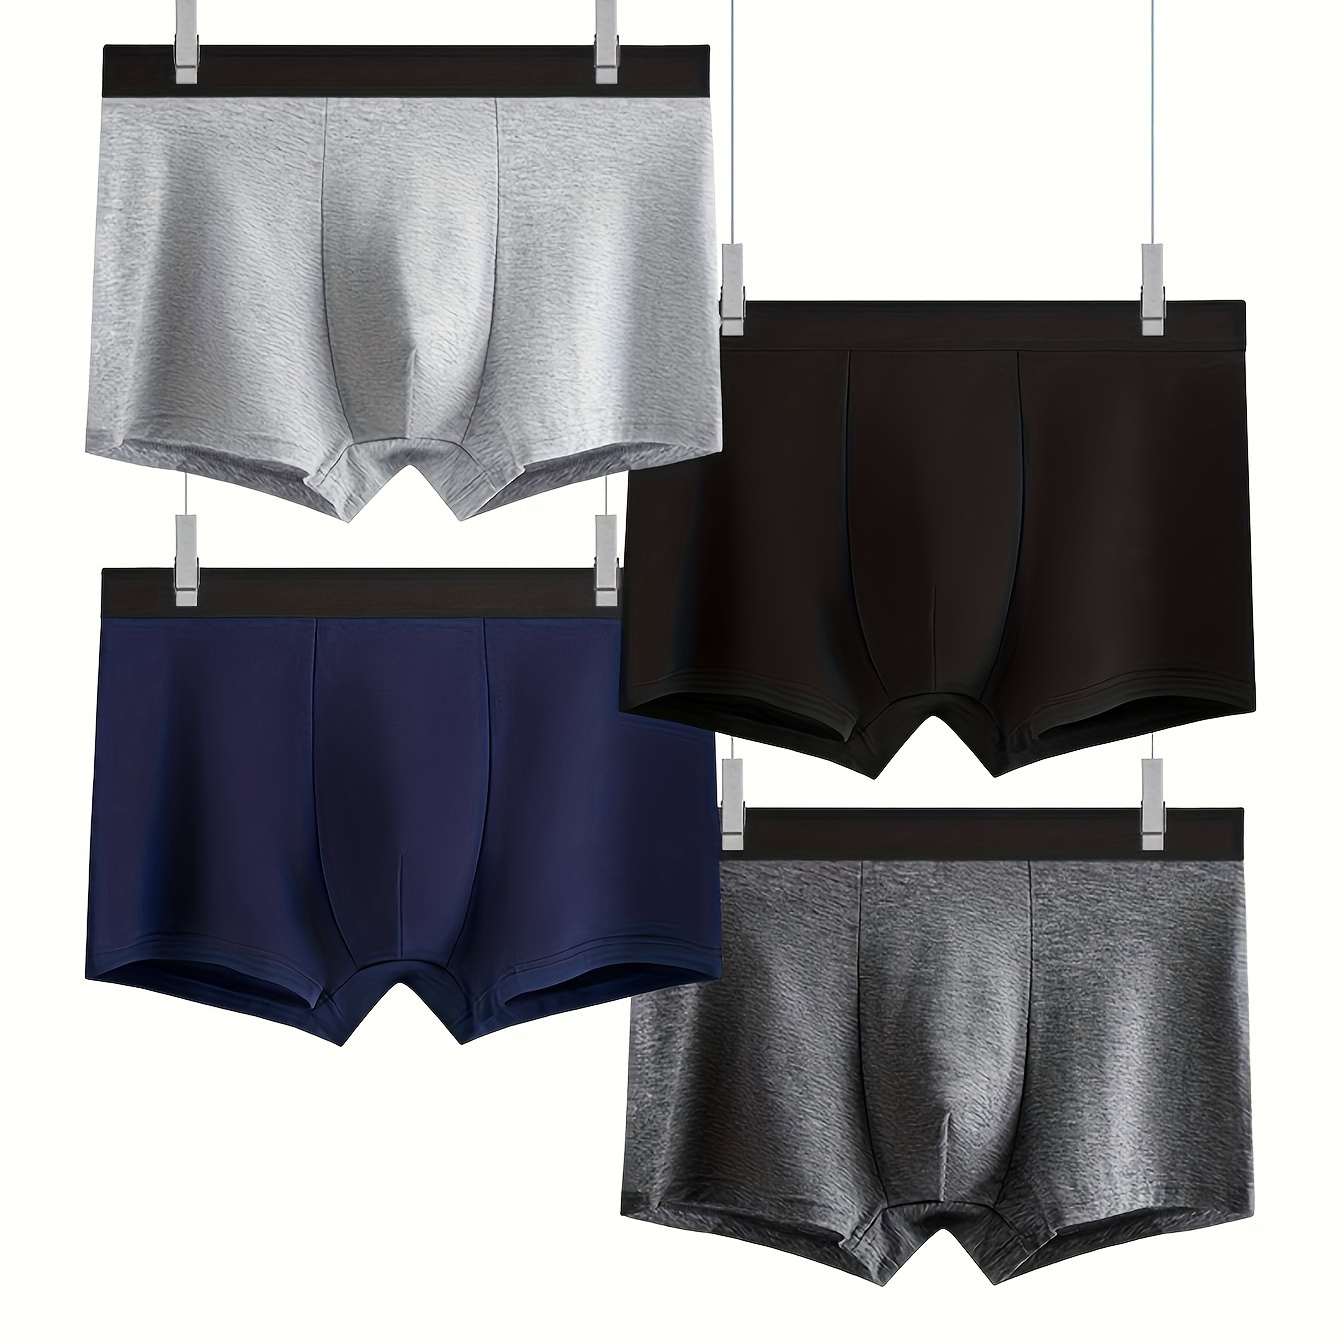 

1/4pcs Men's Cotton Breathable Soft Comfy Slightly Stretch Boxer Briefs Shorts, Casual Plain Color Boxer Trunks, Men's Underwear